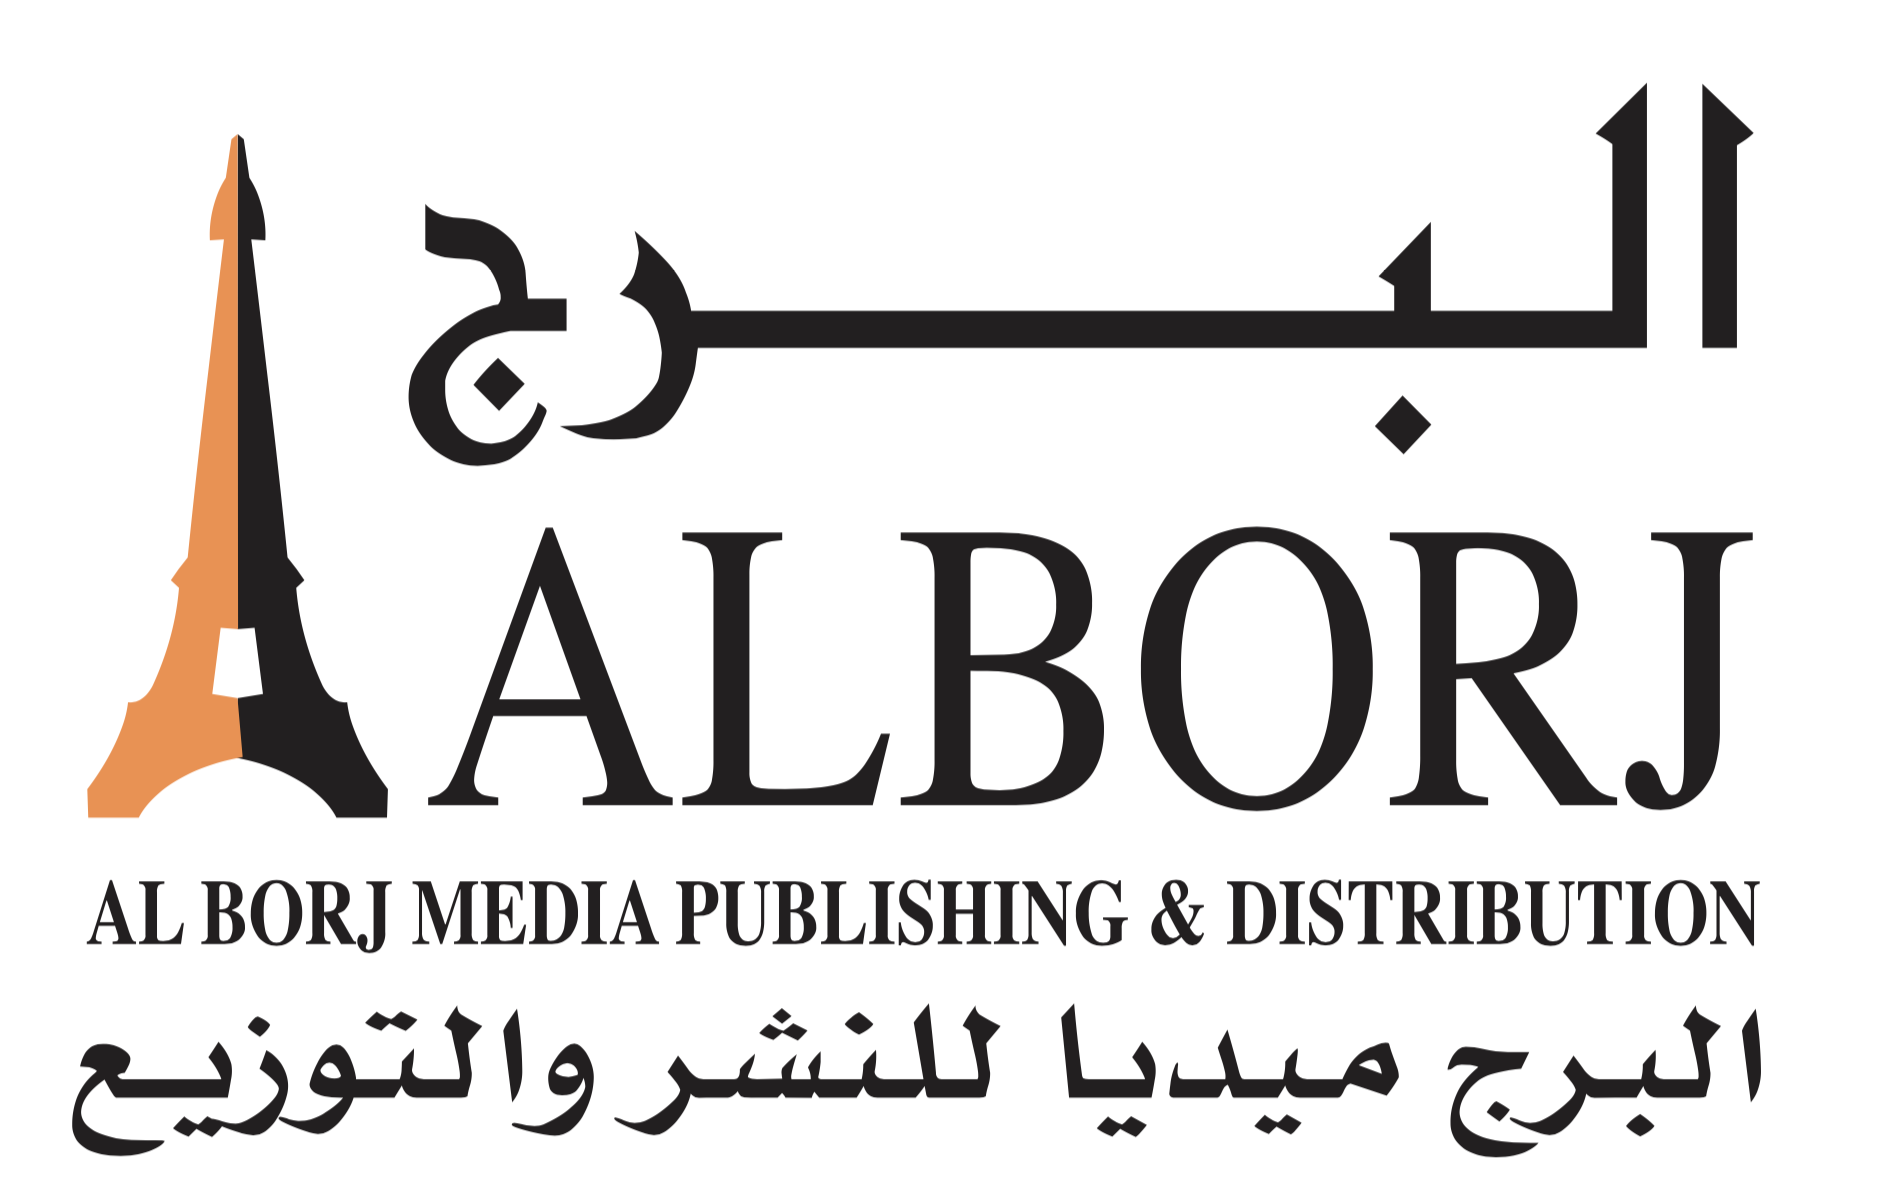 AlBorj Media Publishing & Distribution